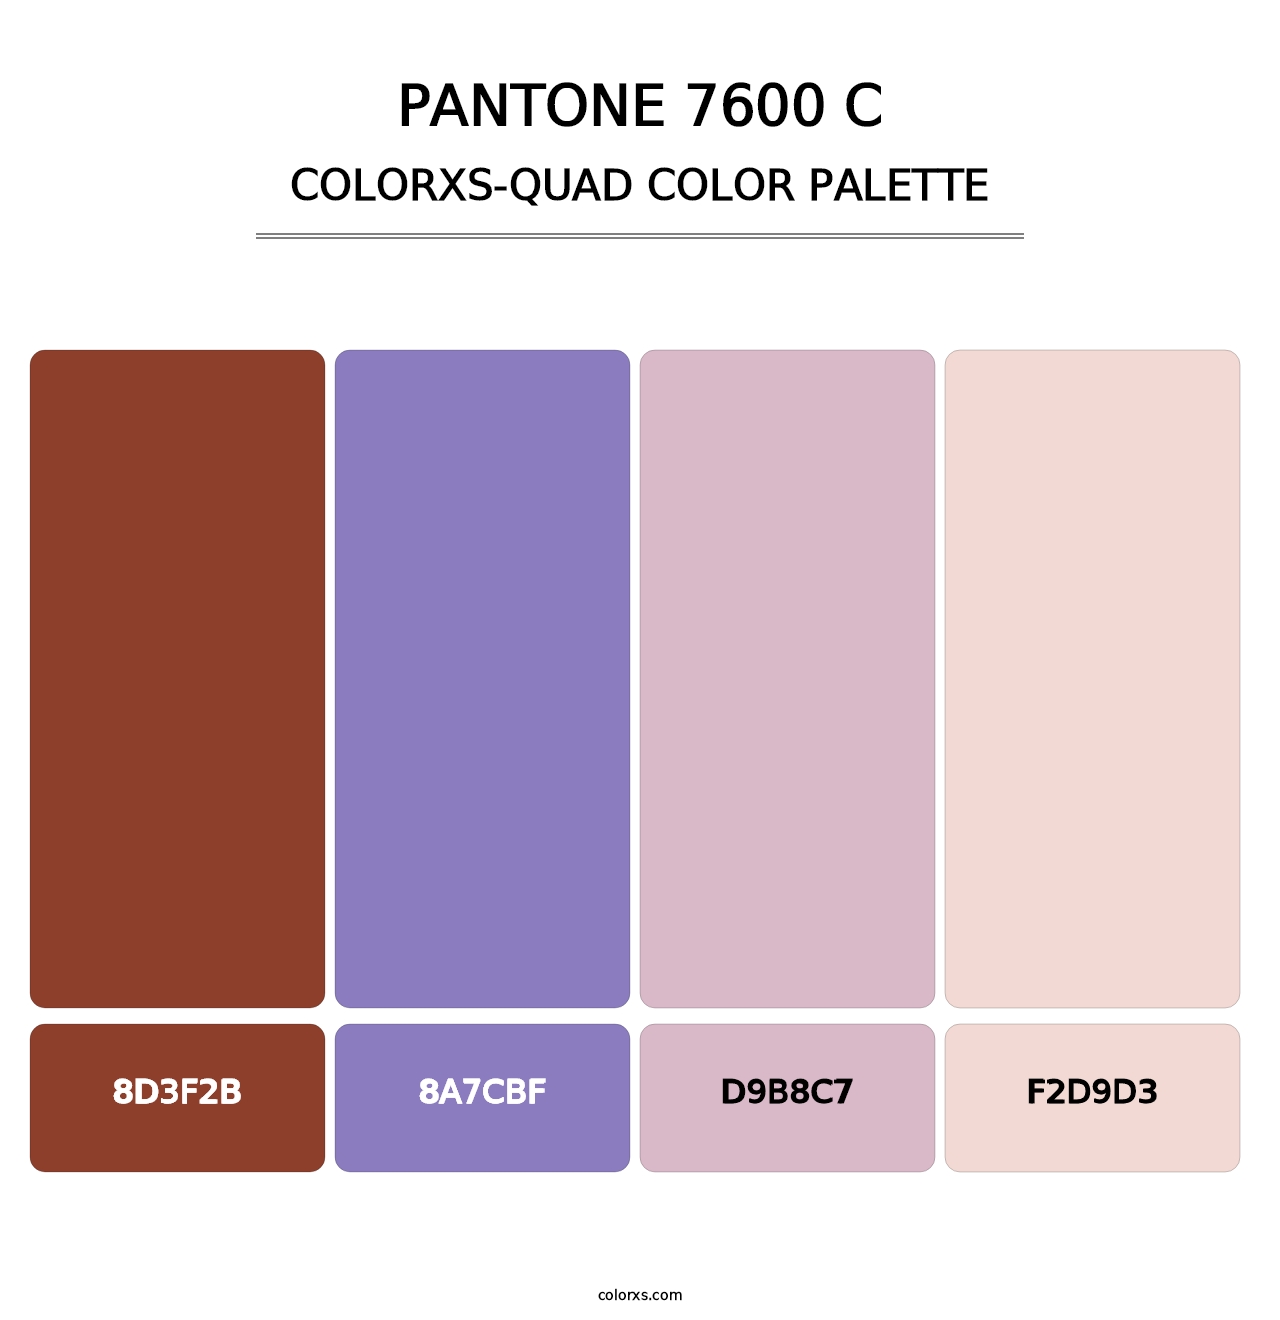 PANTONE 7600 C - Colorxs Quad Palette